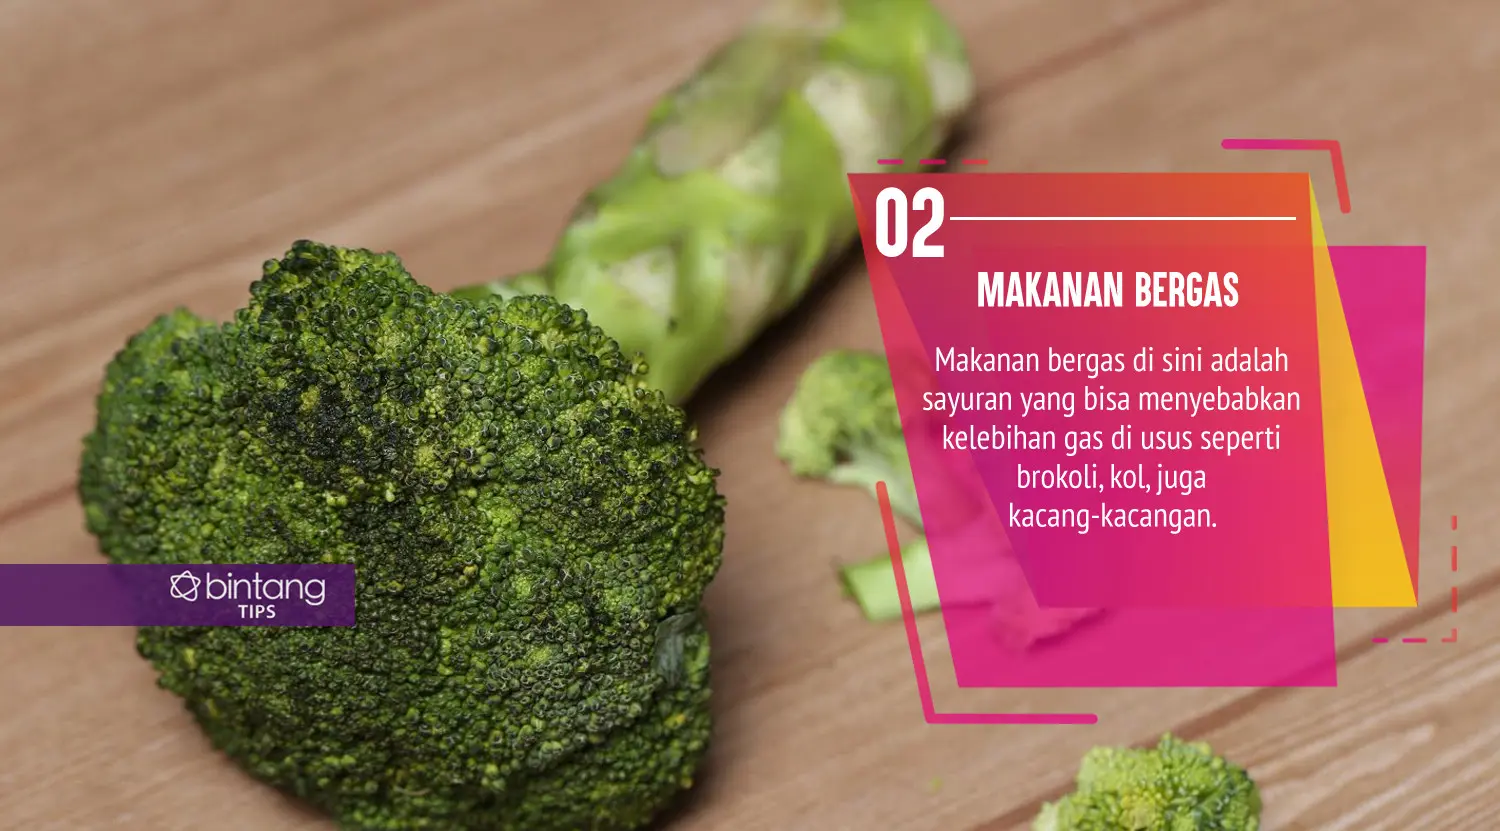 Ini makanan yang harus kamu hindari saat diare. (Foto: Adrian Putra, Digital Imaging: Nurman Abdul Hakim/Bintang.com)